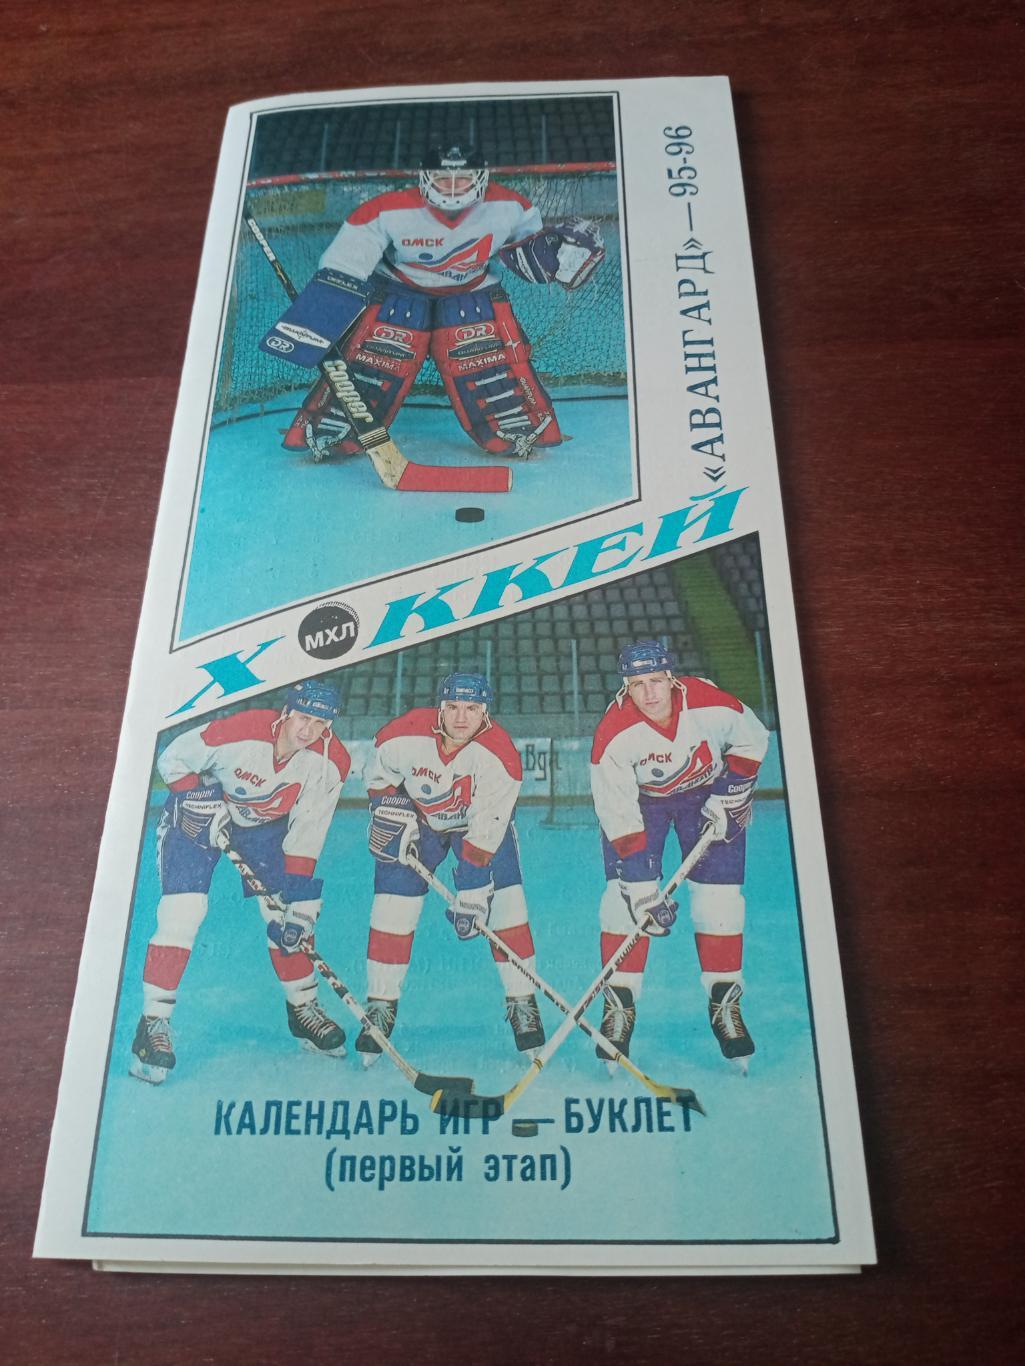 Хоккей. Омск. 1995/1996 гг. первый этап